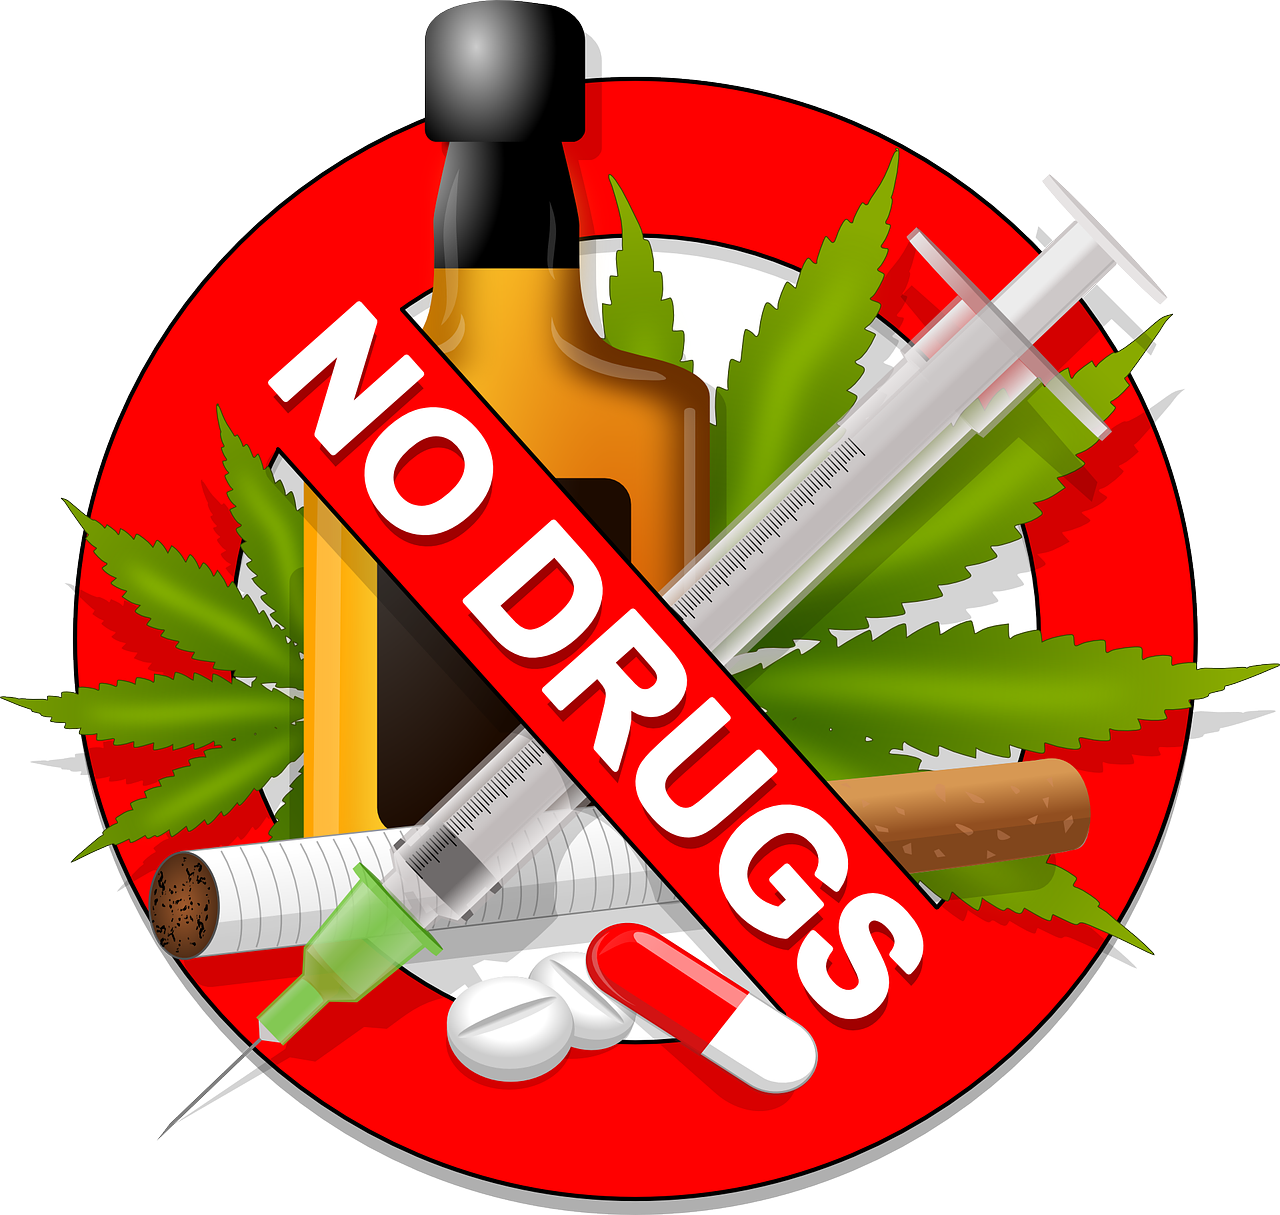 Interdiction de drogue